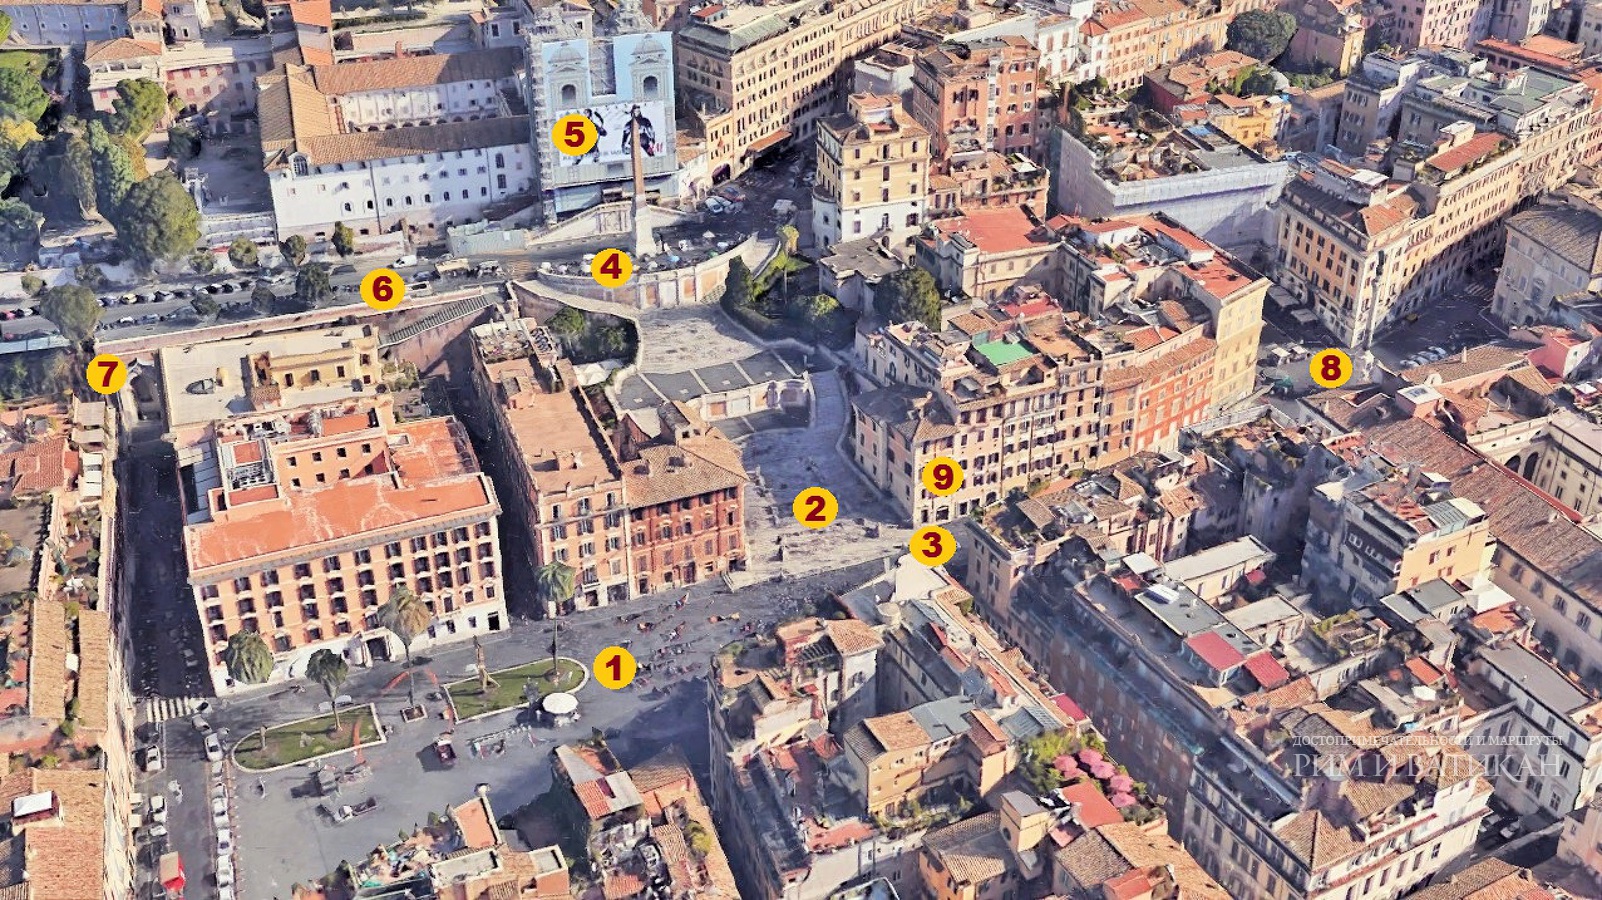 Расположение важных мест и достопримечательностей на площади Испании в Риме